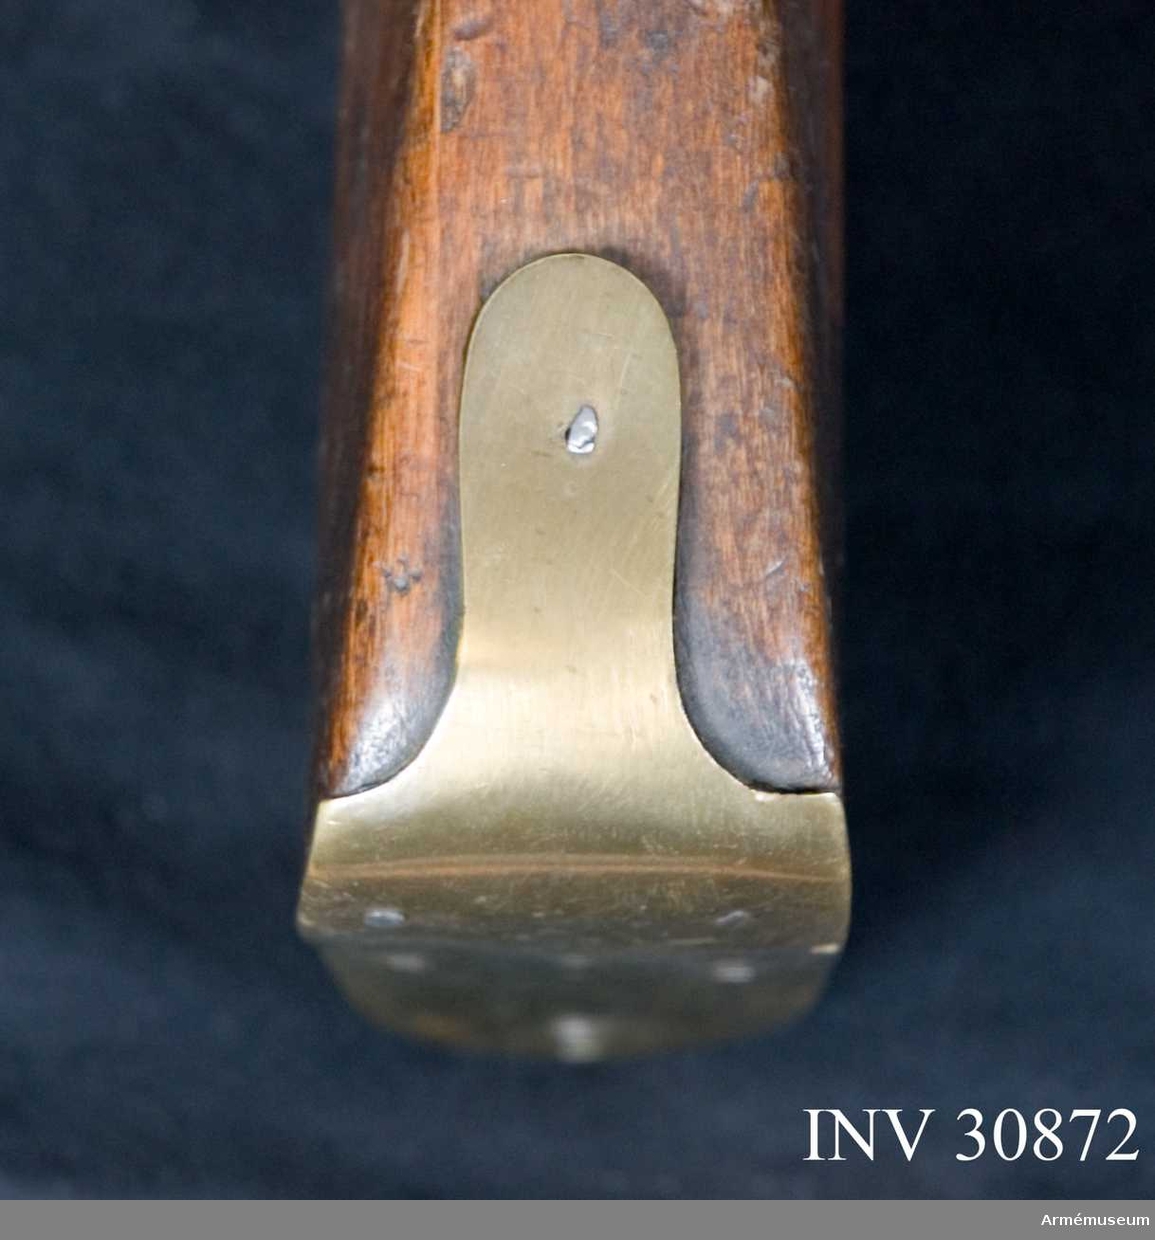 Grupp E XIV.

Afrikanskt handelsgevär. Projekt från 1700-talets mitt. Tillverkad efter engelsk förebild i Norrtälje gevärsfaktori. På kolven återfinns "234". 